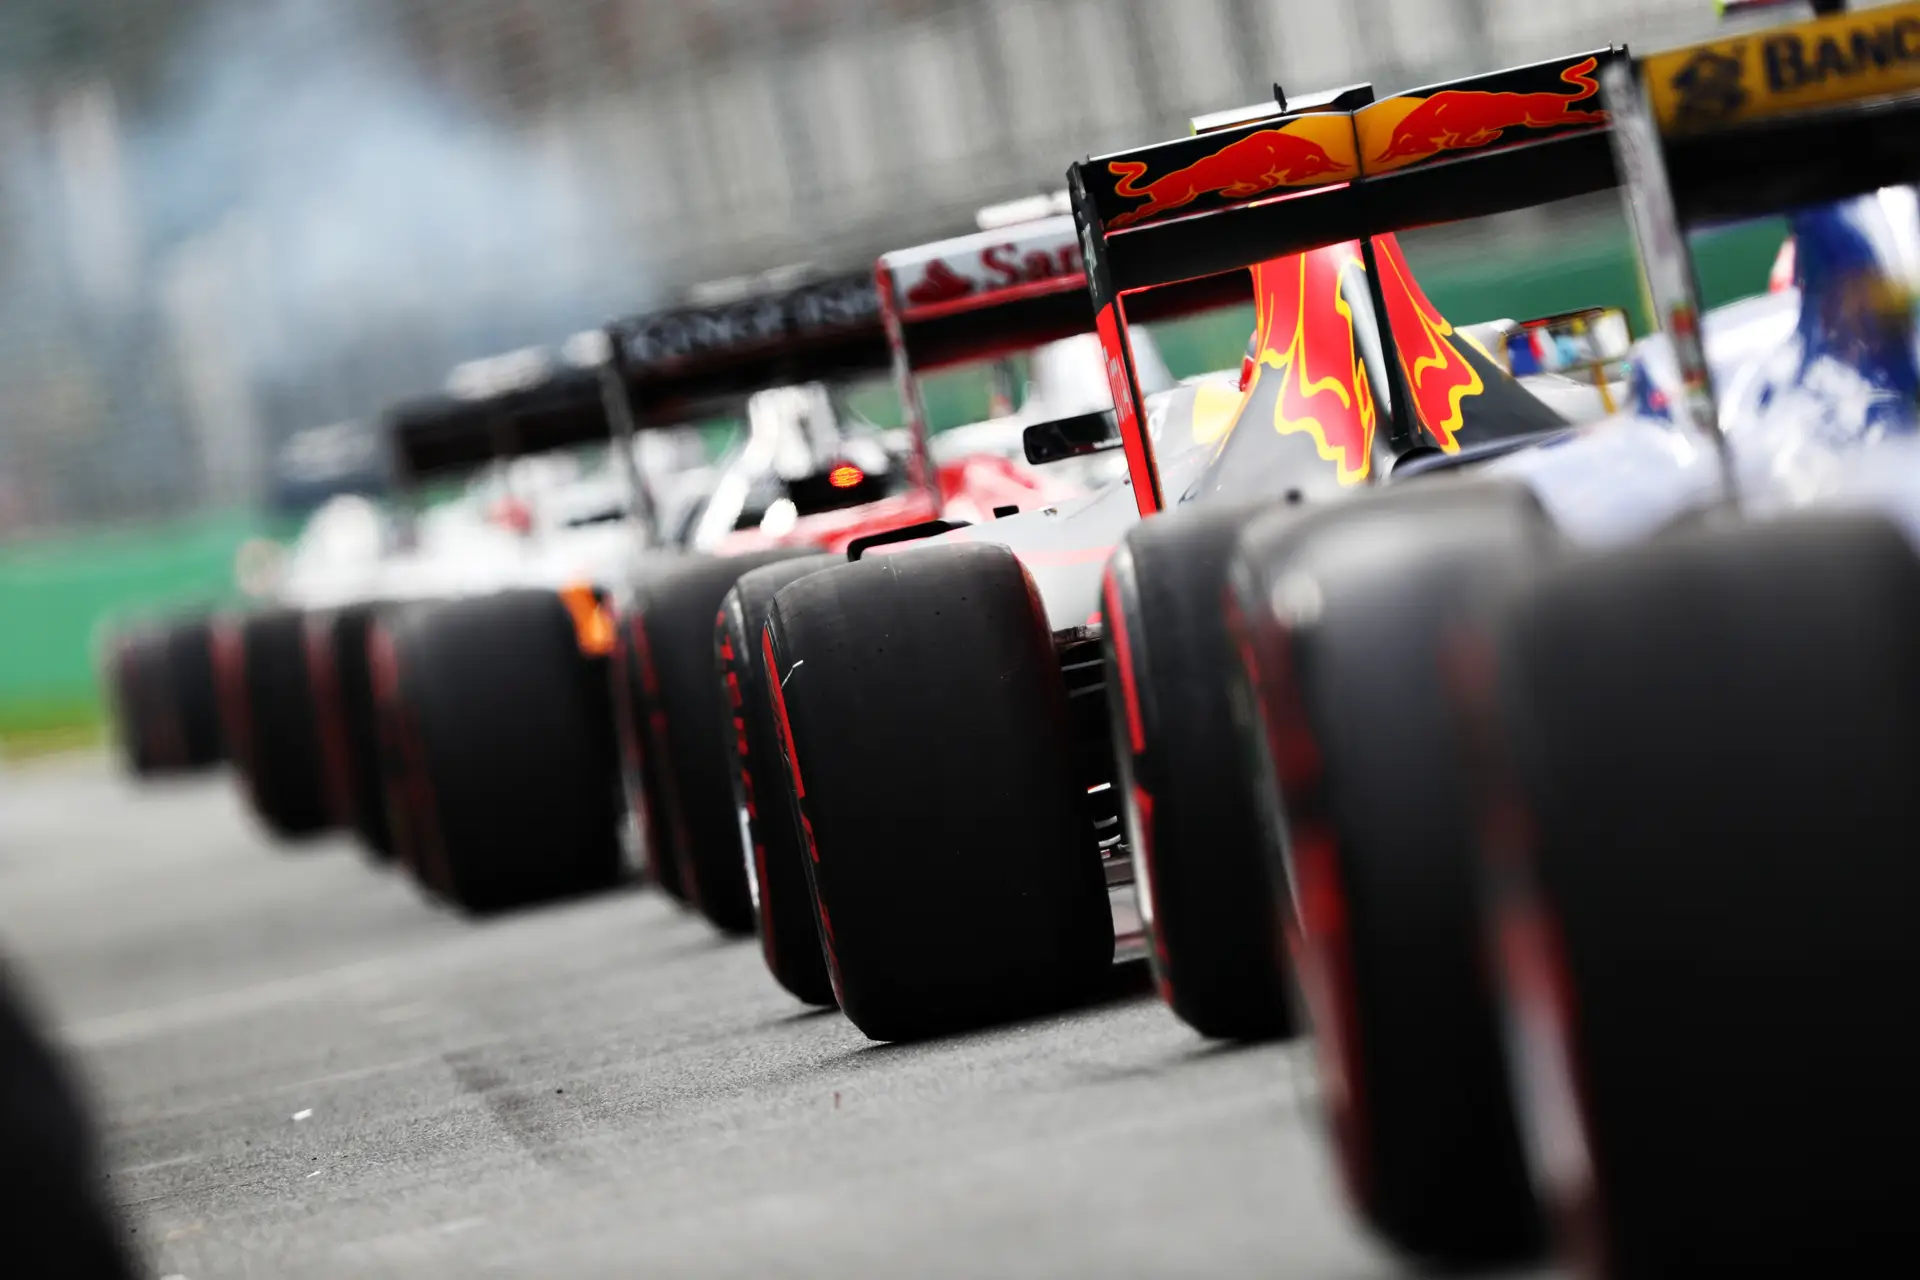 Está resolvida a polémica que marcou a pausa de verão na Fórmula 1